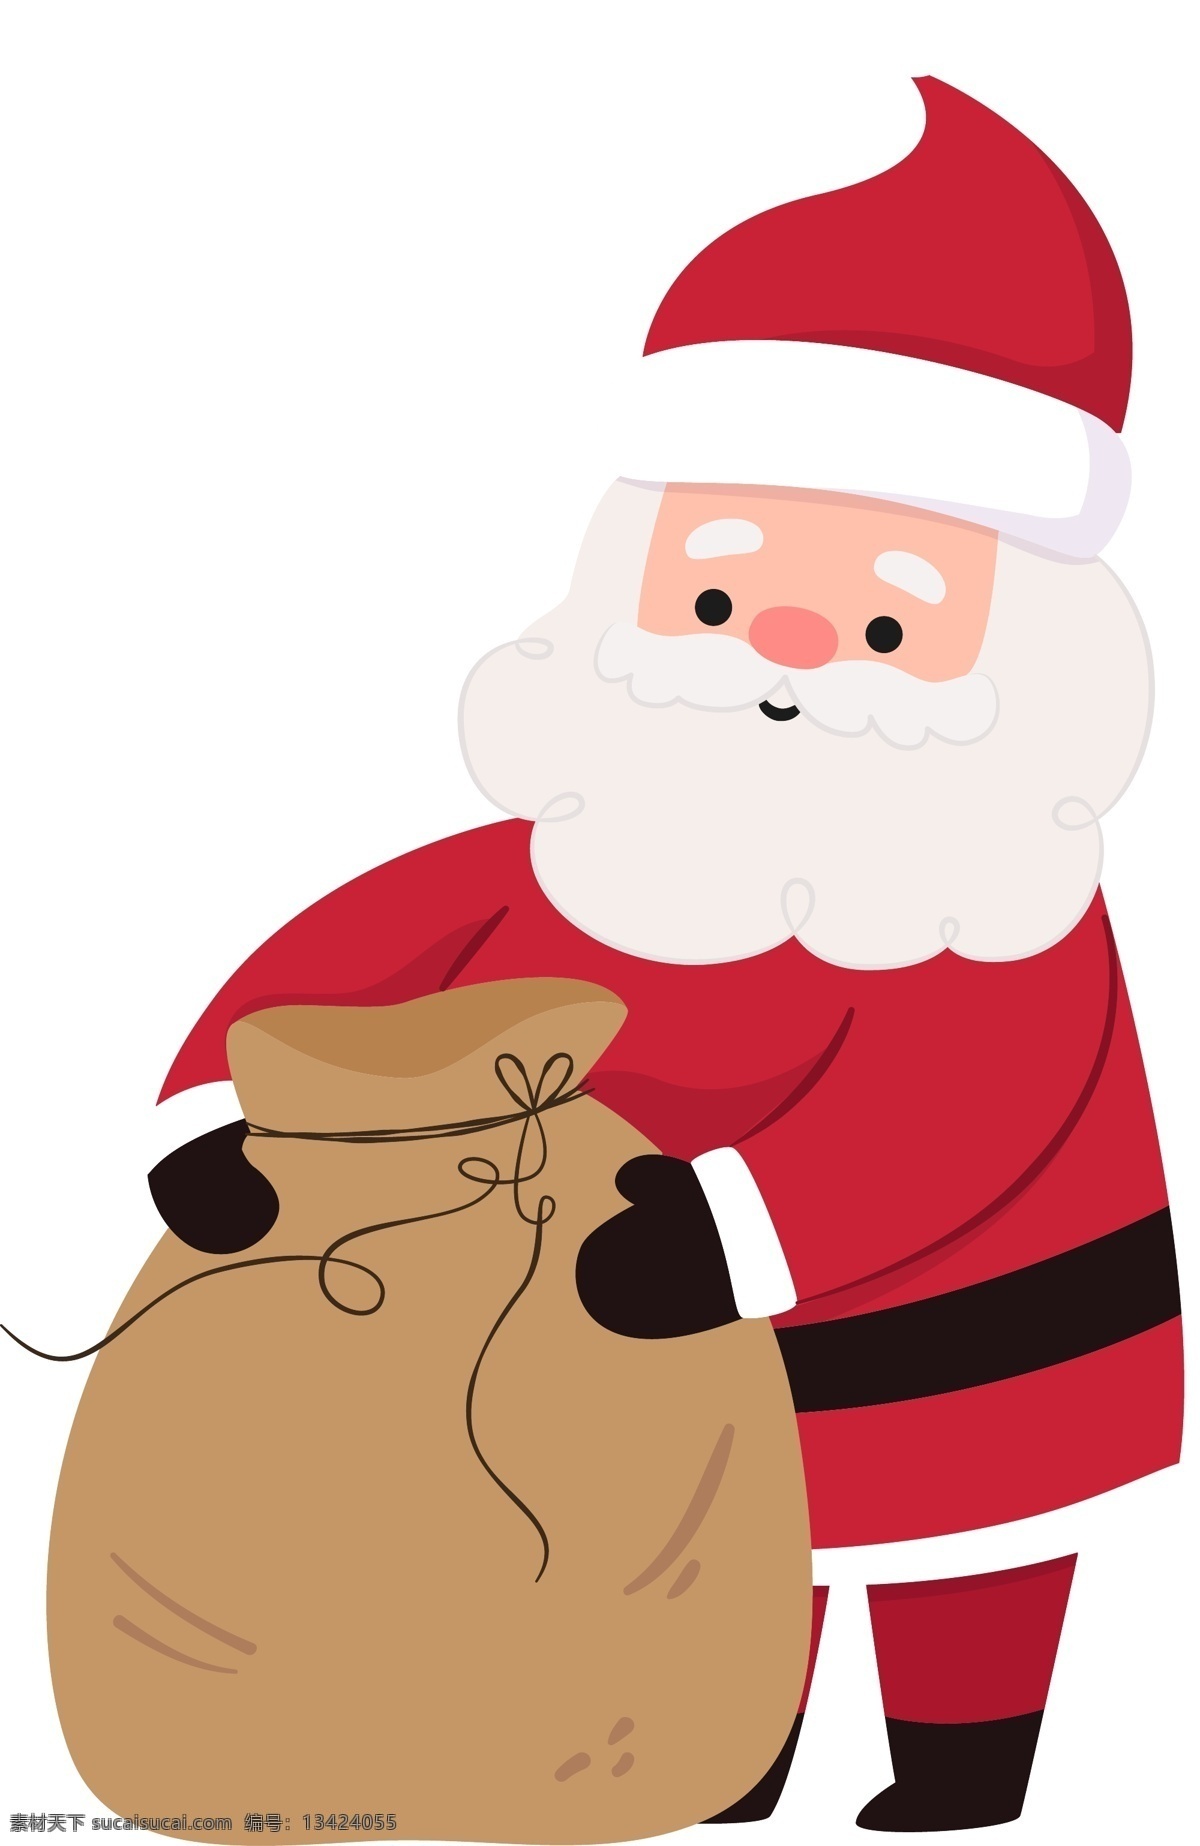 圣诞老人 原创 元素 圣诞节 礼物袋子 白胡子老爷爷 西方节日 派送礼物